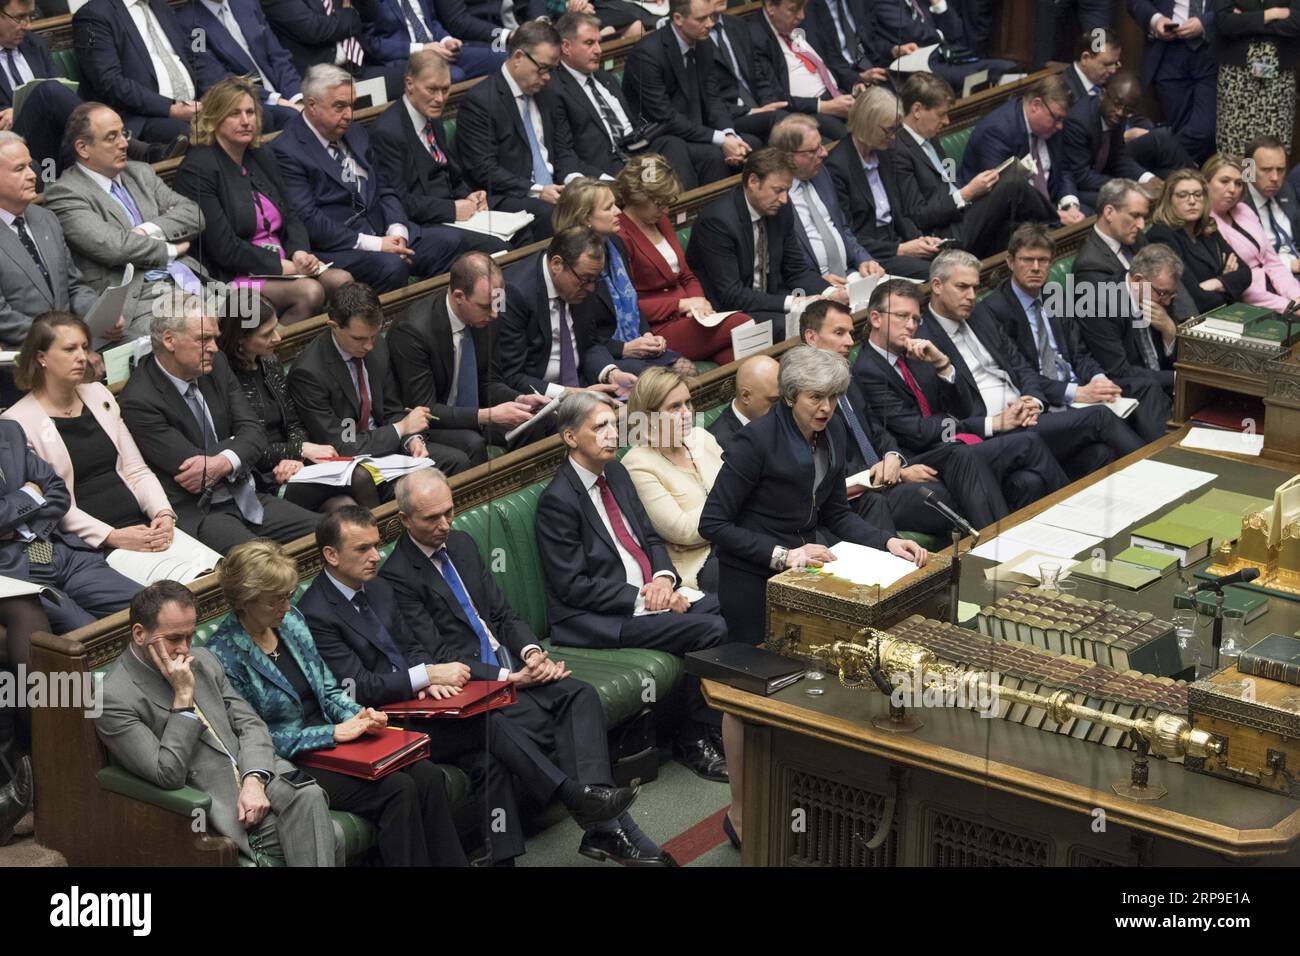 Nachrichten Themen der Woche KW14 Nachrichten Bilder des Tages 190404 -- LONDON, 4. April 2019 -- die britische Premierministerin Theresa May nimmt am 3. April 2019 an den Fragen des Premierministers im Unterhaus in London Teil. Die britischen Gesetzgeber haben am Mittwochabend für ein Gesetz gestimmt, das das No-Deal-Abkommen ausschließt und den Austritt Großbritanniens aus der Europäischen Union in einer engen Marge verzögert. UK Parliament/Mark Duffy BRITAIN-LONDON-PMQS HOCxMANDATORYxCREDIT:xUKxParliament/MarkxDuffy PUBLICATIONxNOTxINxCHN Stockfoto